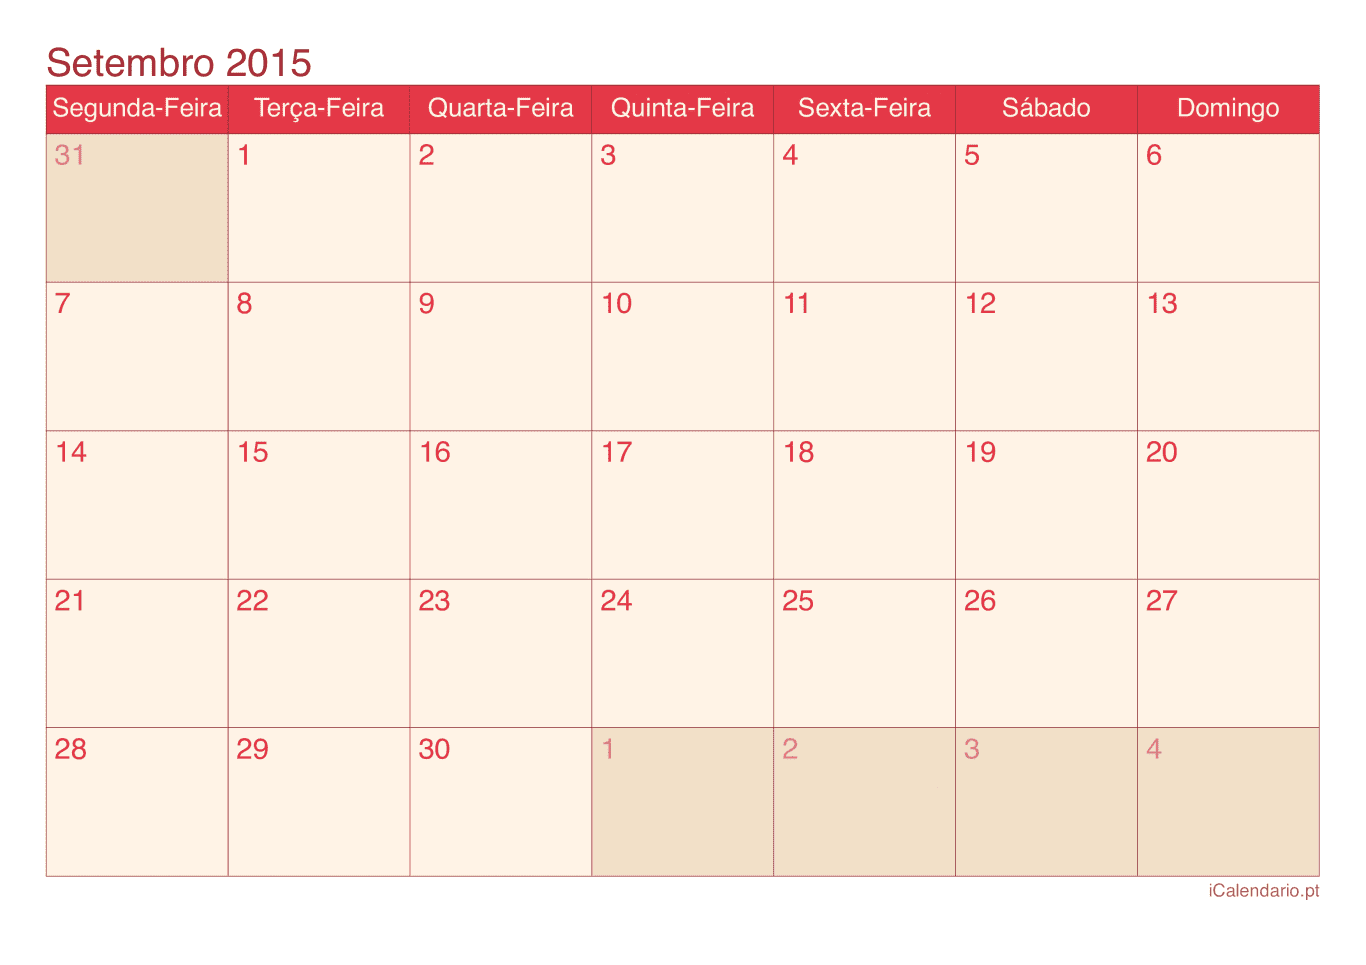 Calendário de setembro 2015 - Cherry